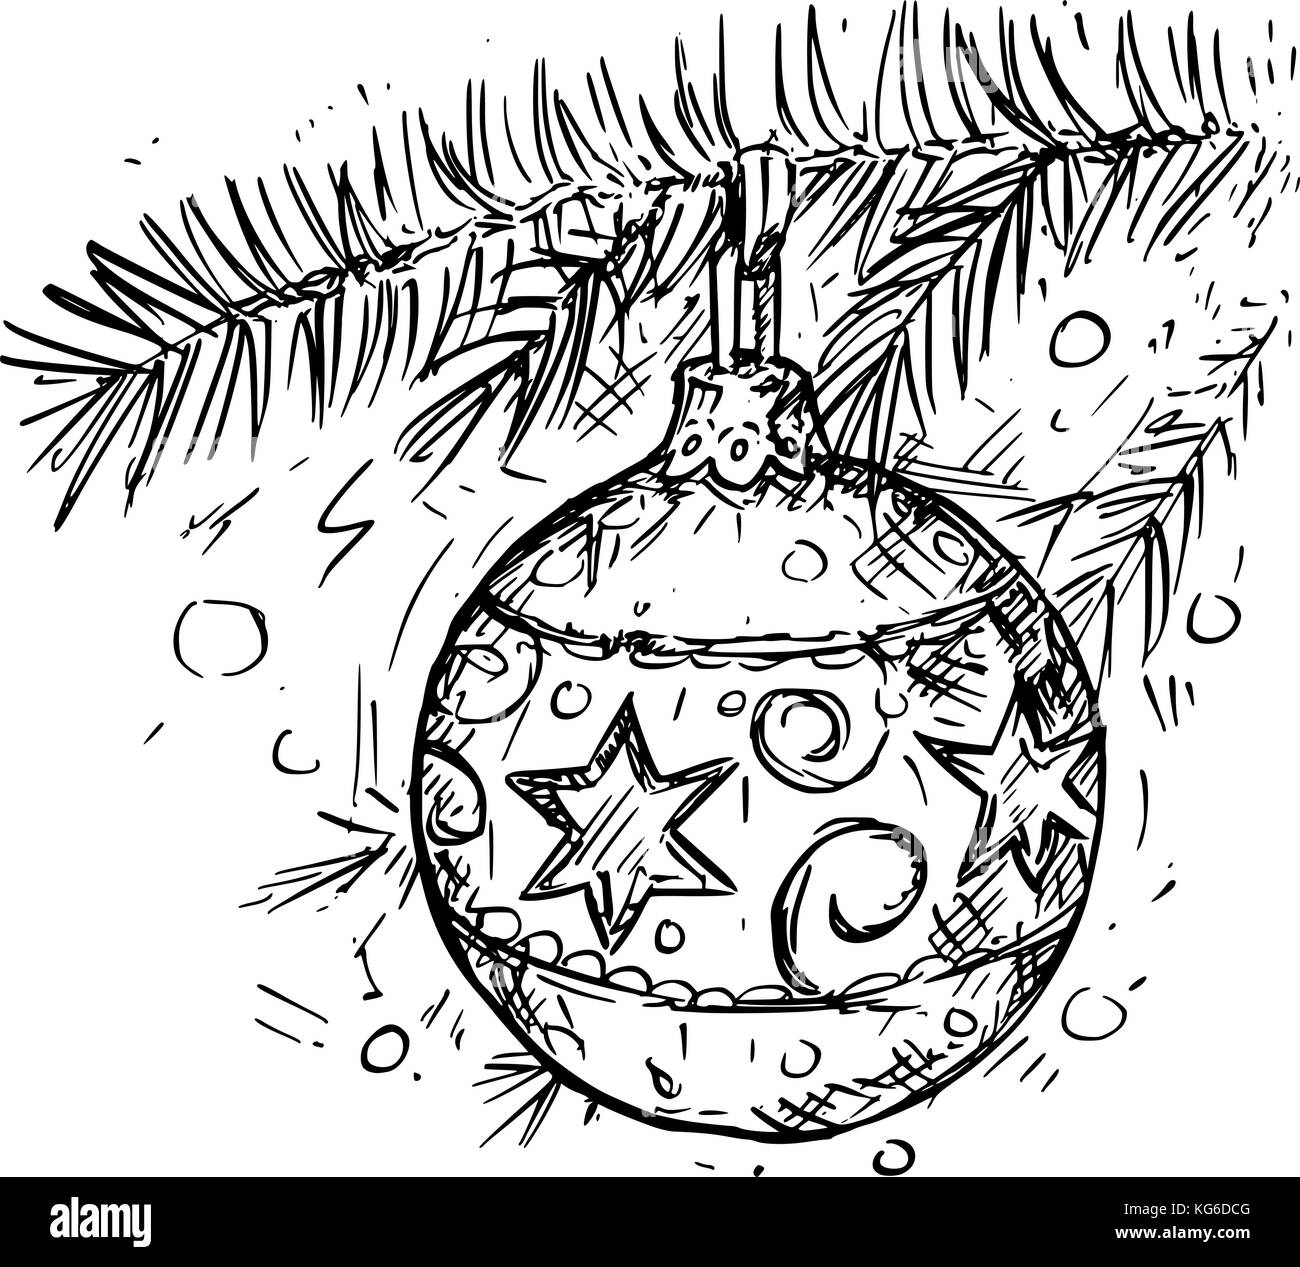 Weihnachten zeichnung Stock-Vektorgrafiken kaufen - Alamy